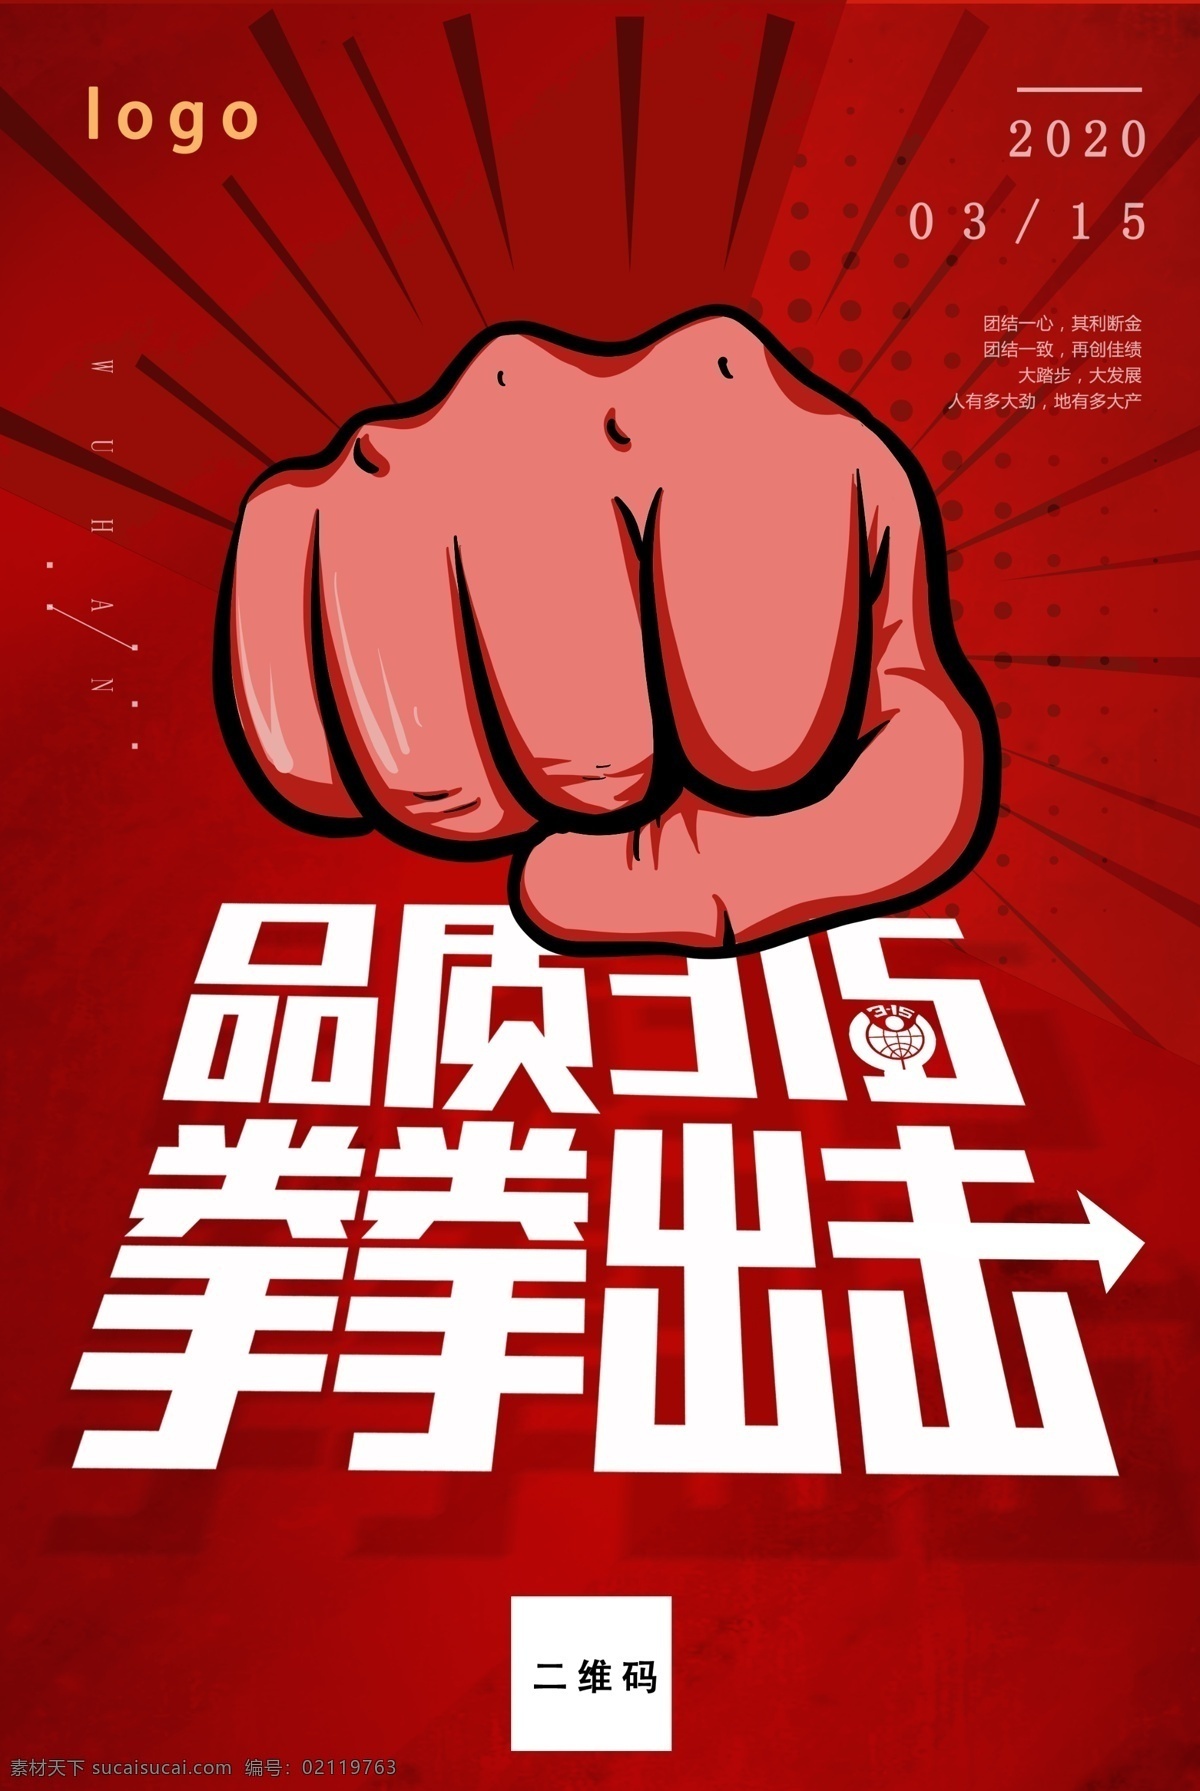 品质315 拳拳出击主题 适用于 315消费者 权益保护日 海报